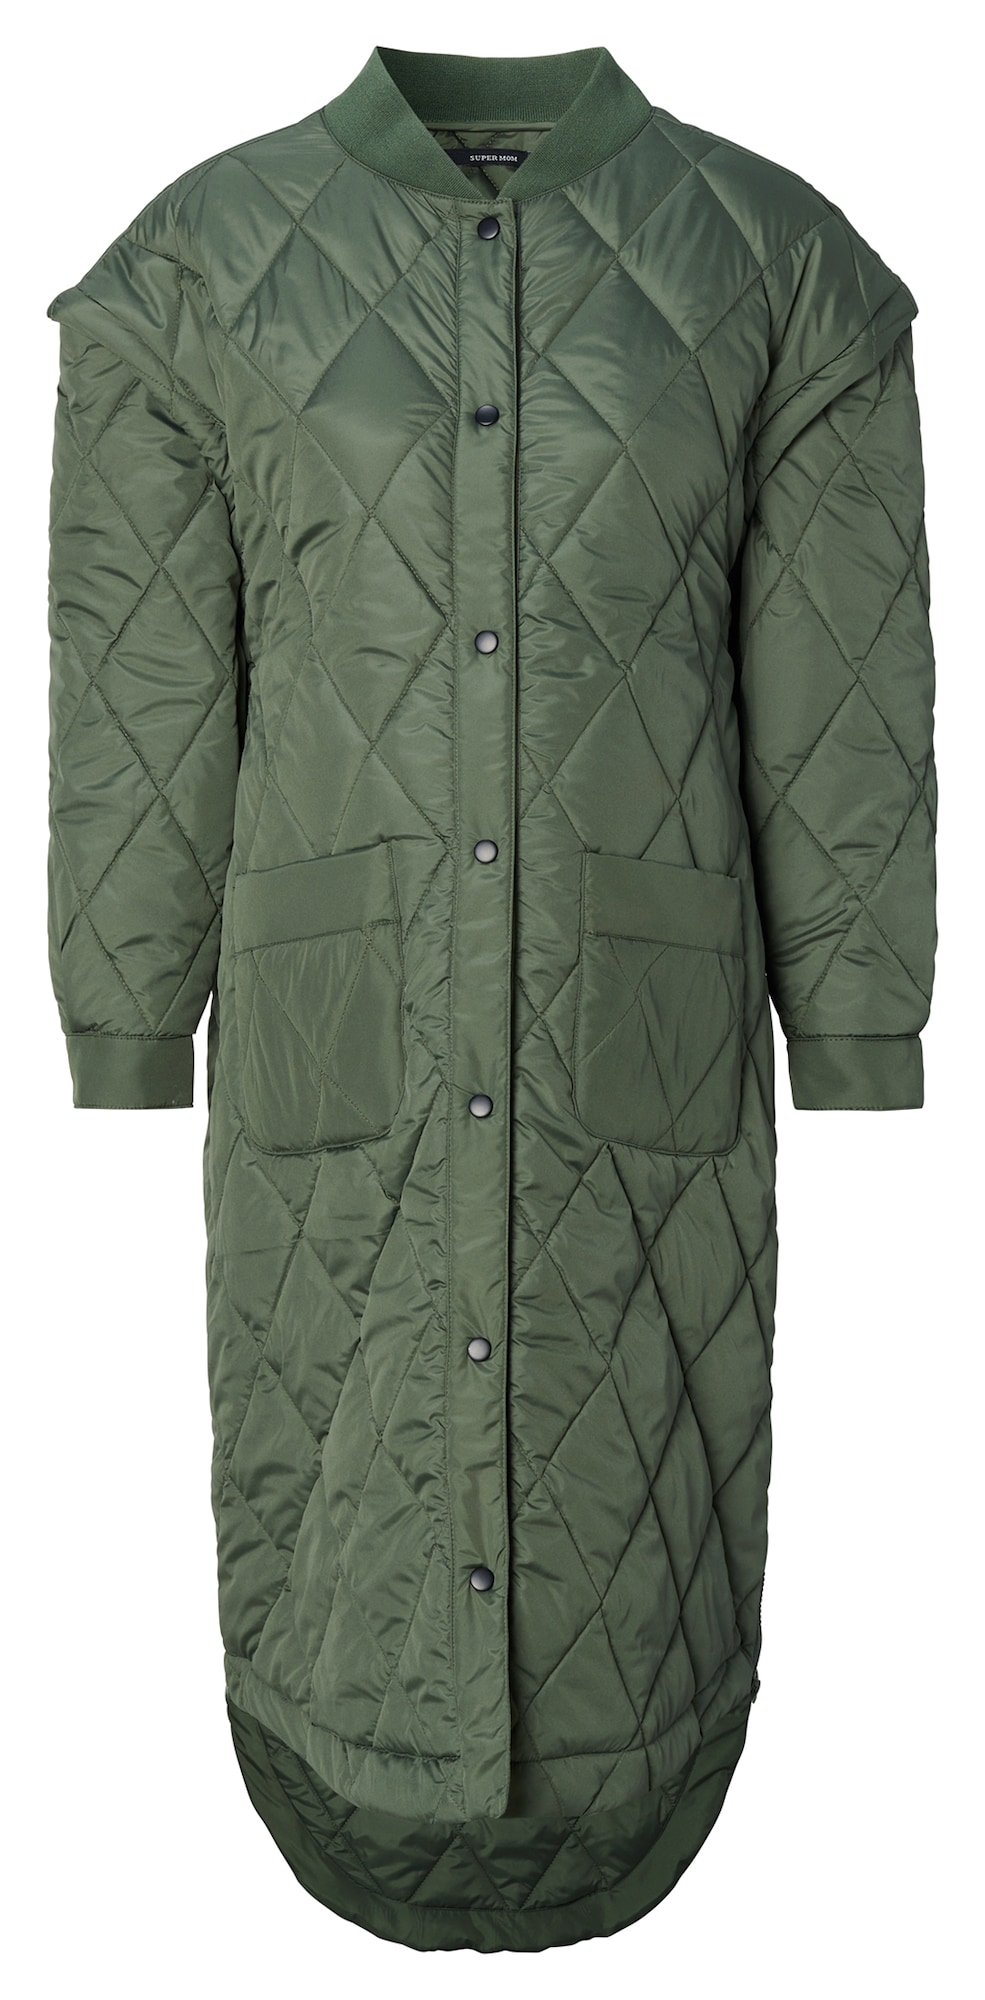 Supermom Demisezoninis paltas 'Box' žolės žalia